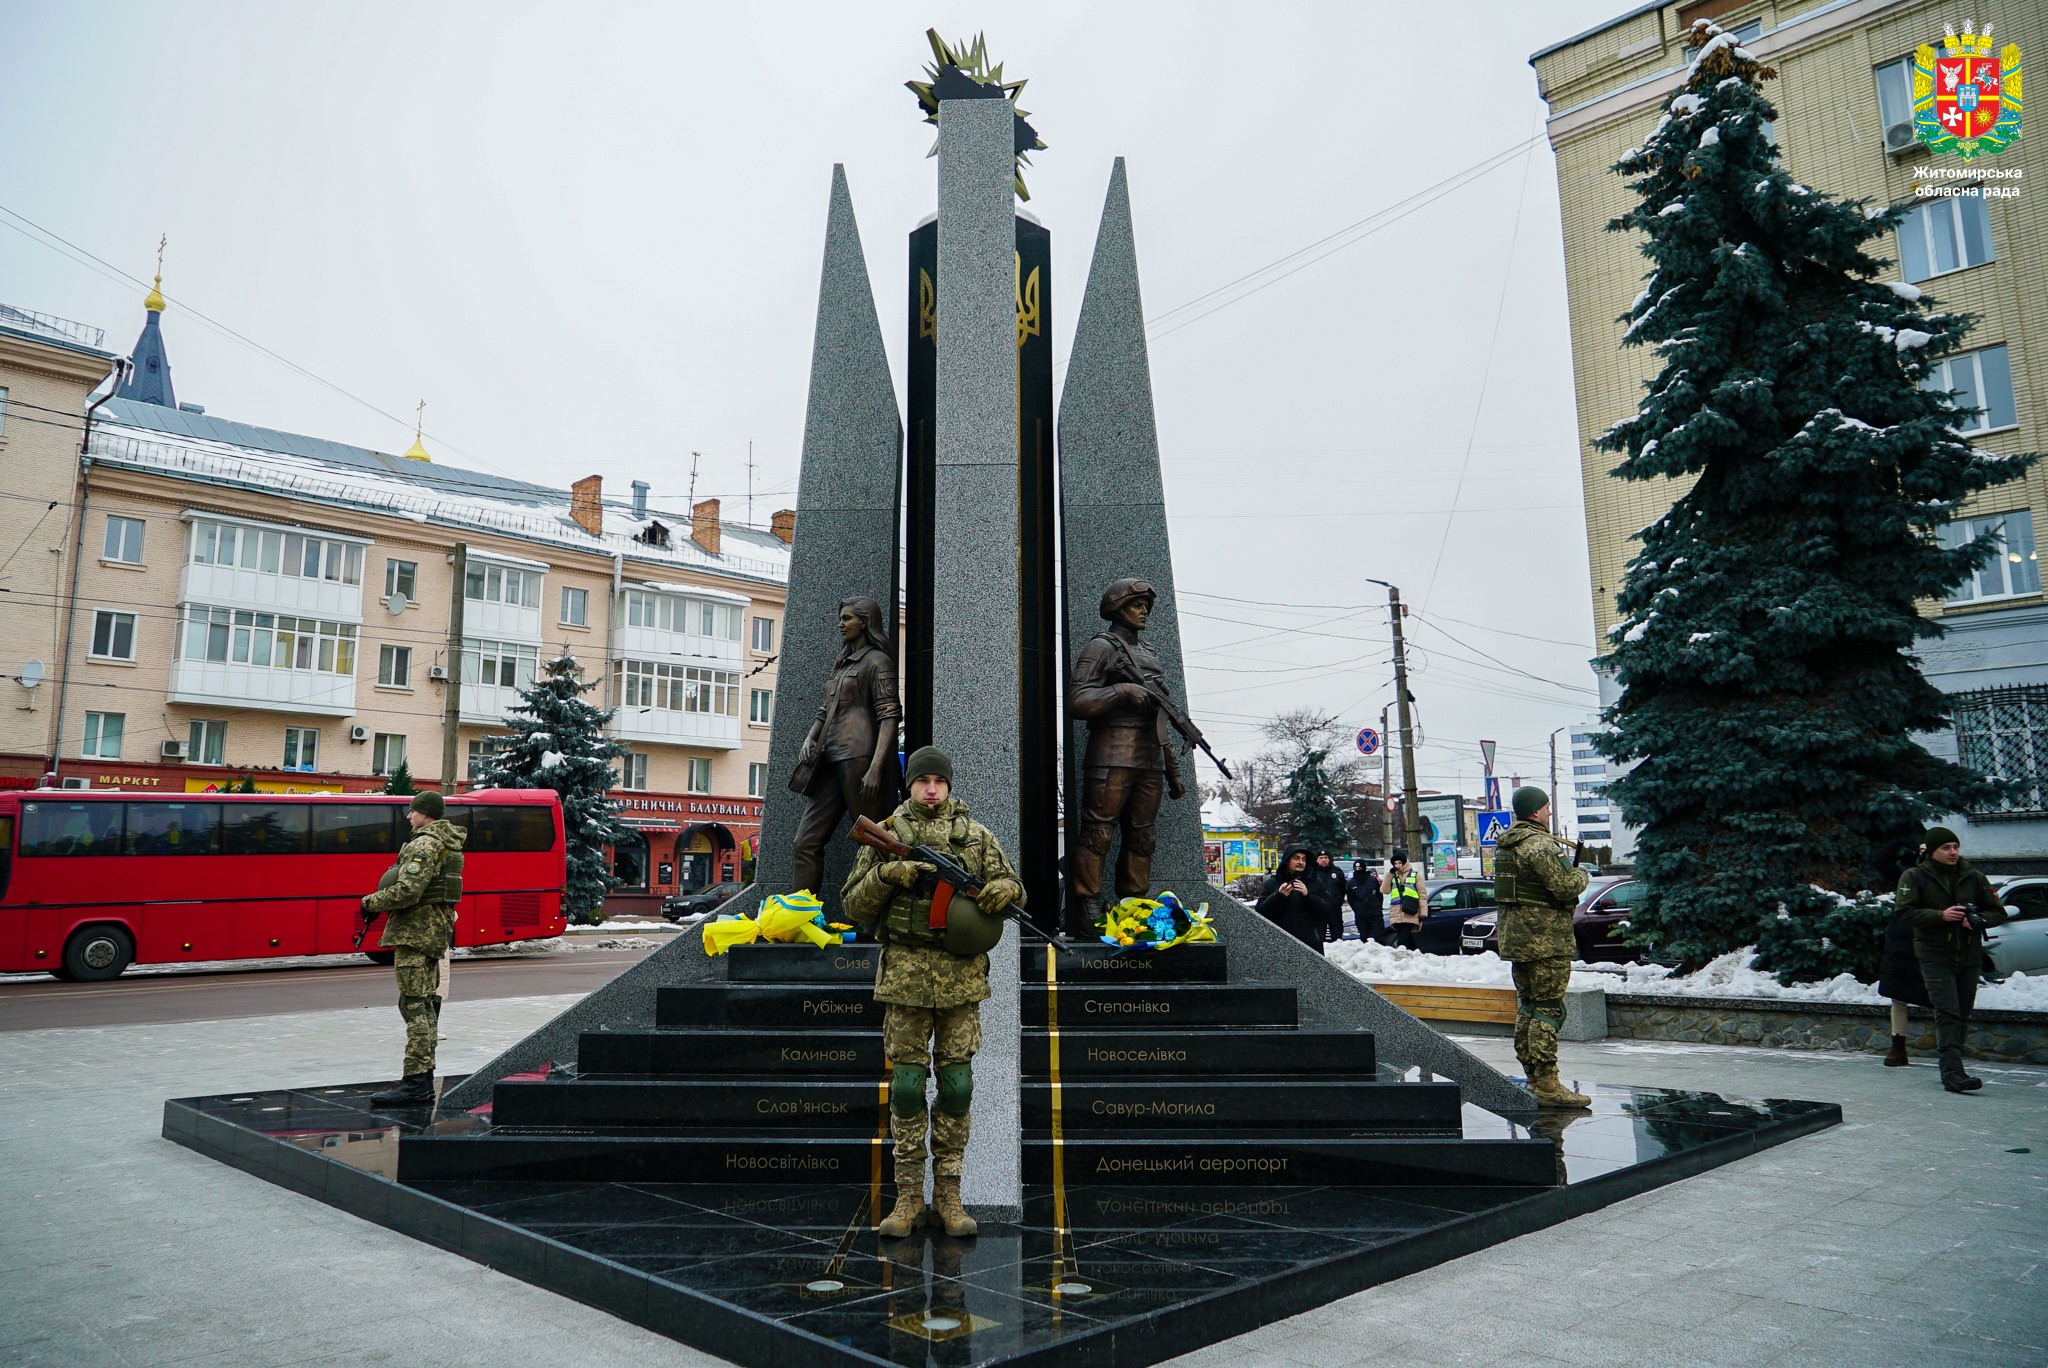 "Ми вдячні звитяжним українським воїнам за кожну хвилину нашої свободи",- Володимир Ширма